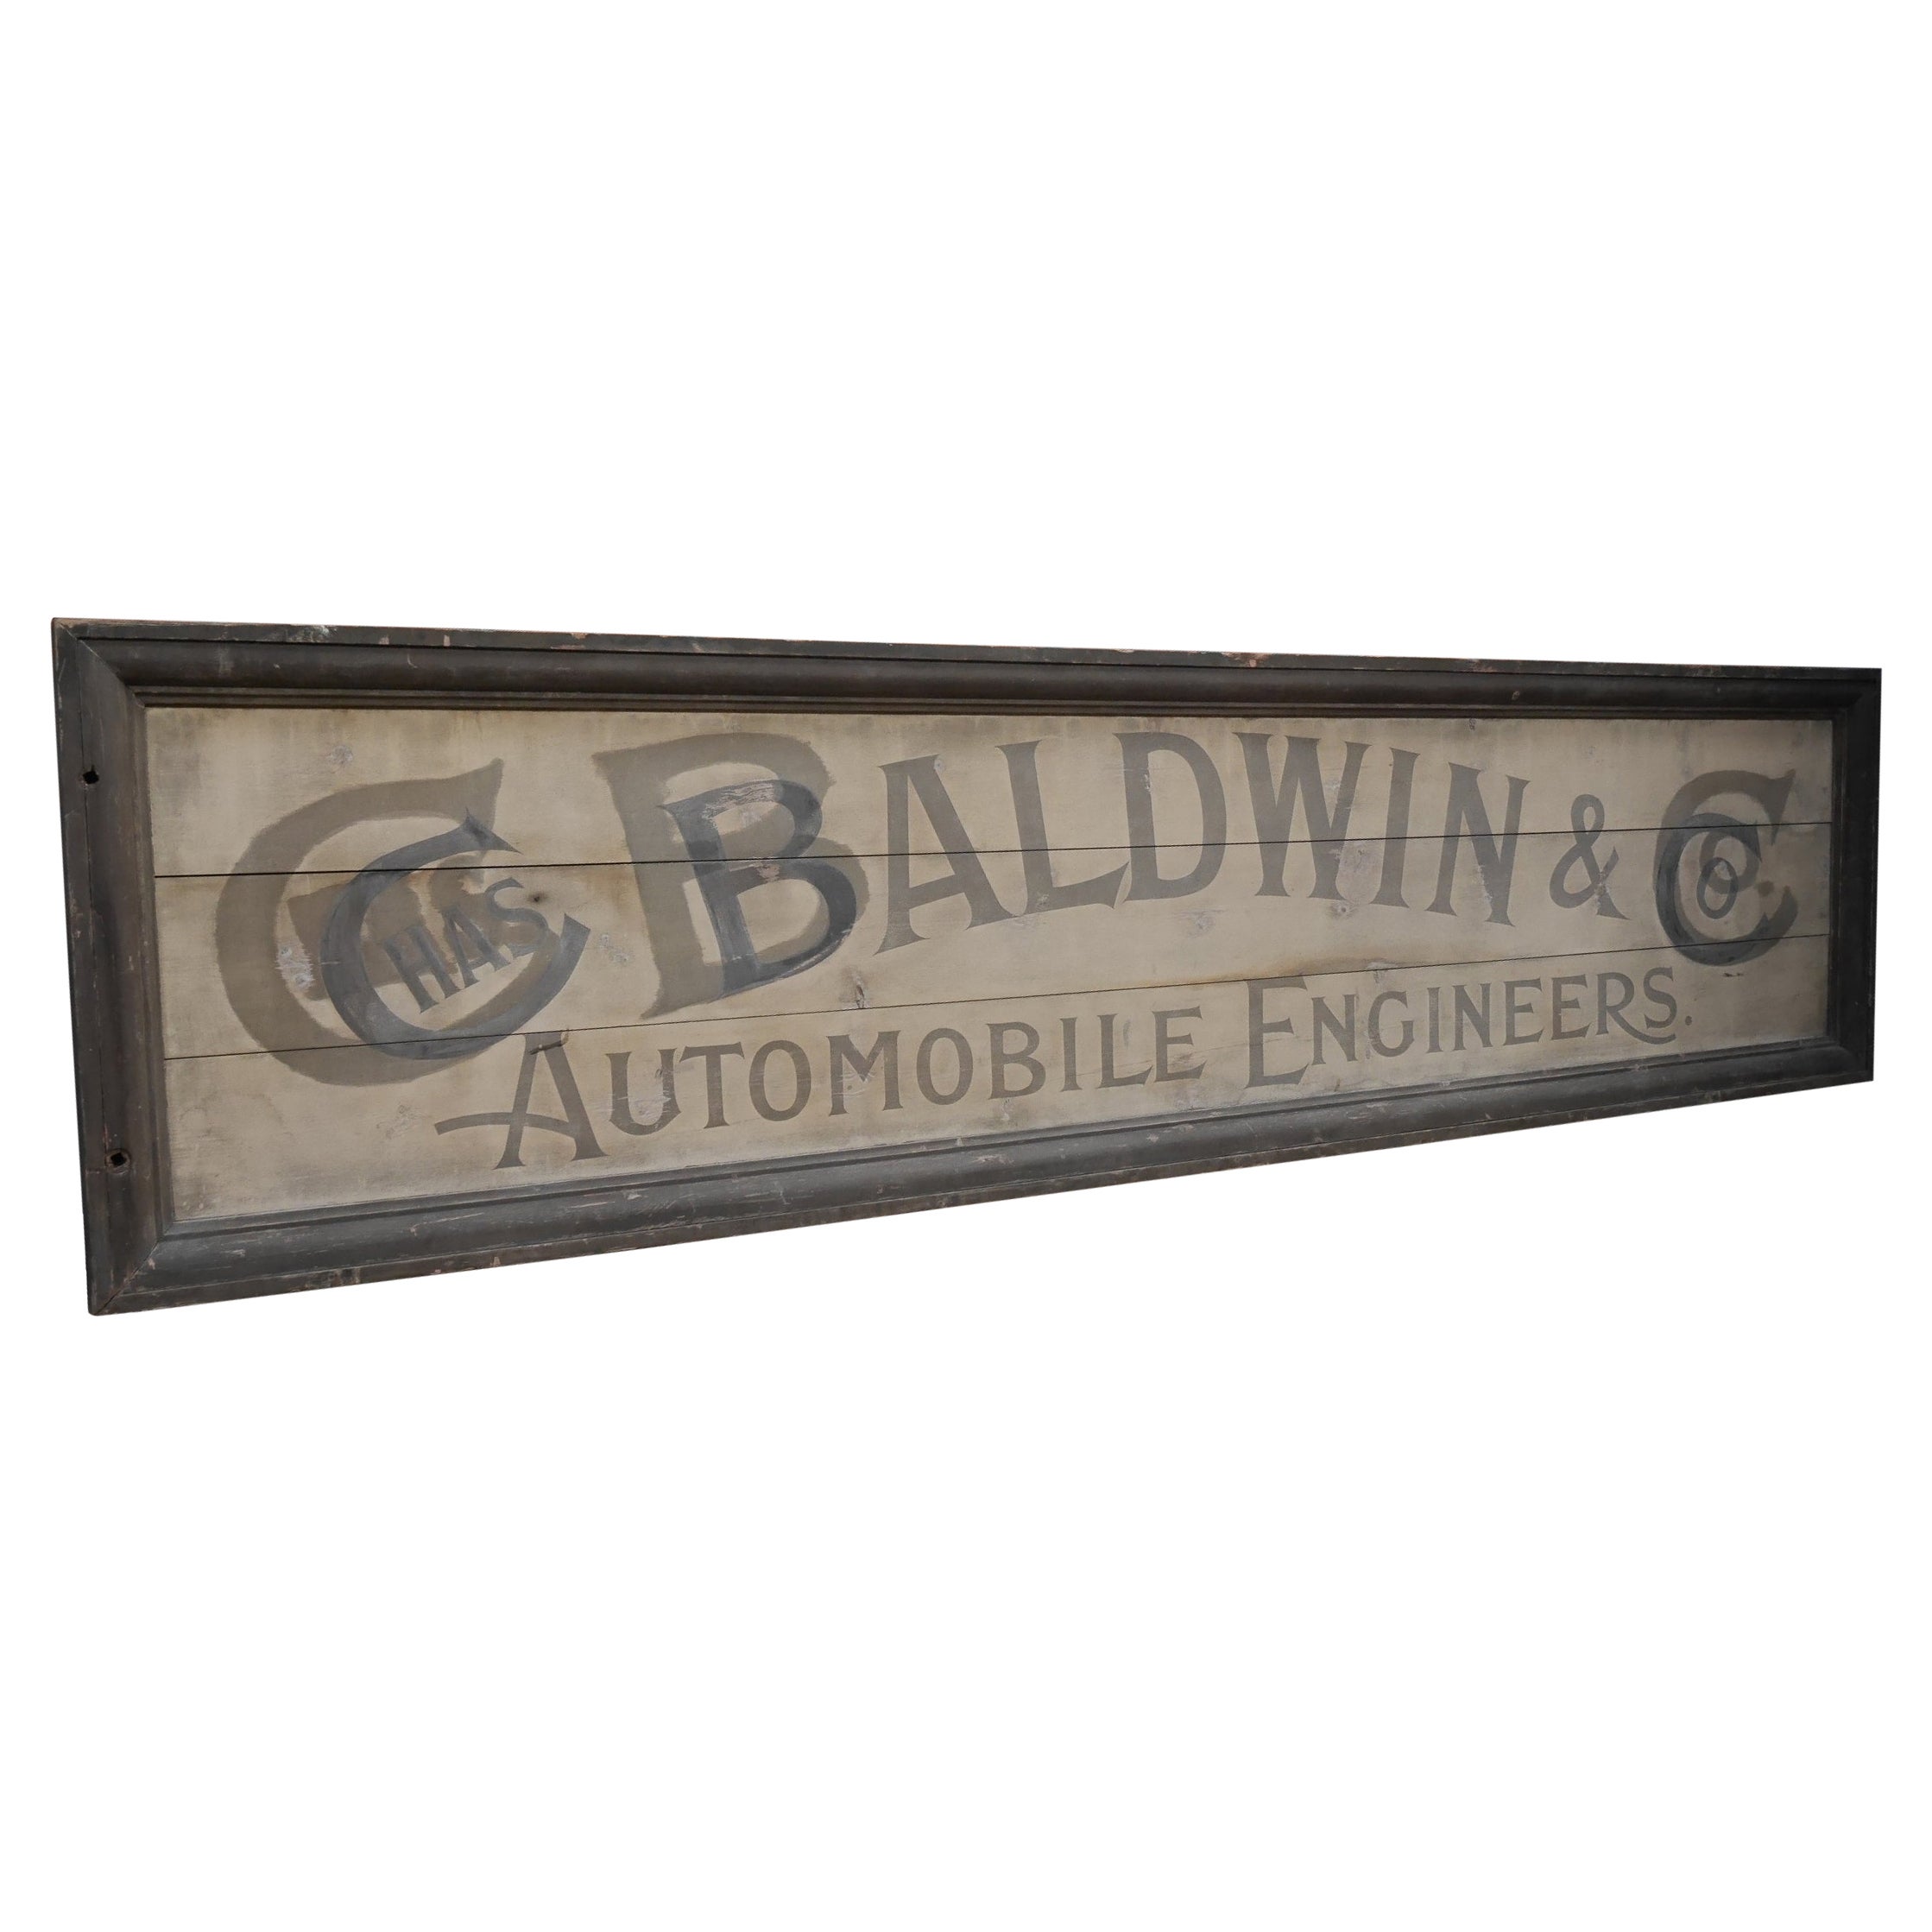 Grand panneau de signalisation ancien de garage - Chas Baldwin, ingénieur automobile